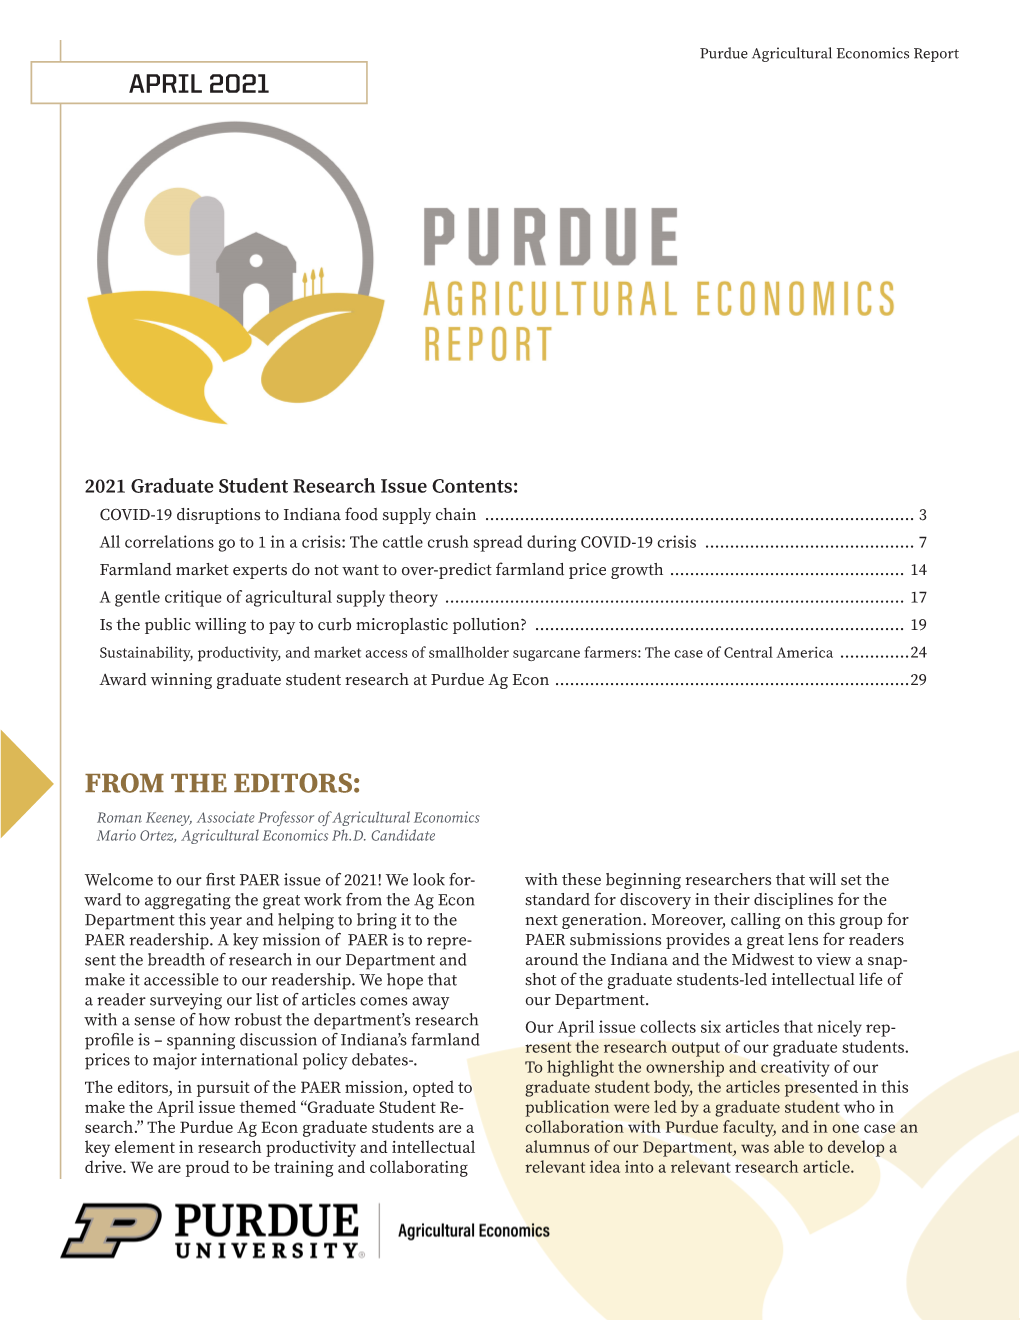 Download Full Report (PDF)